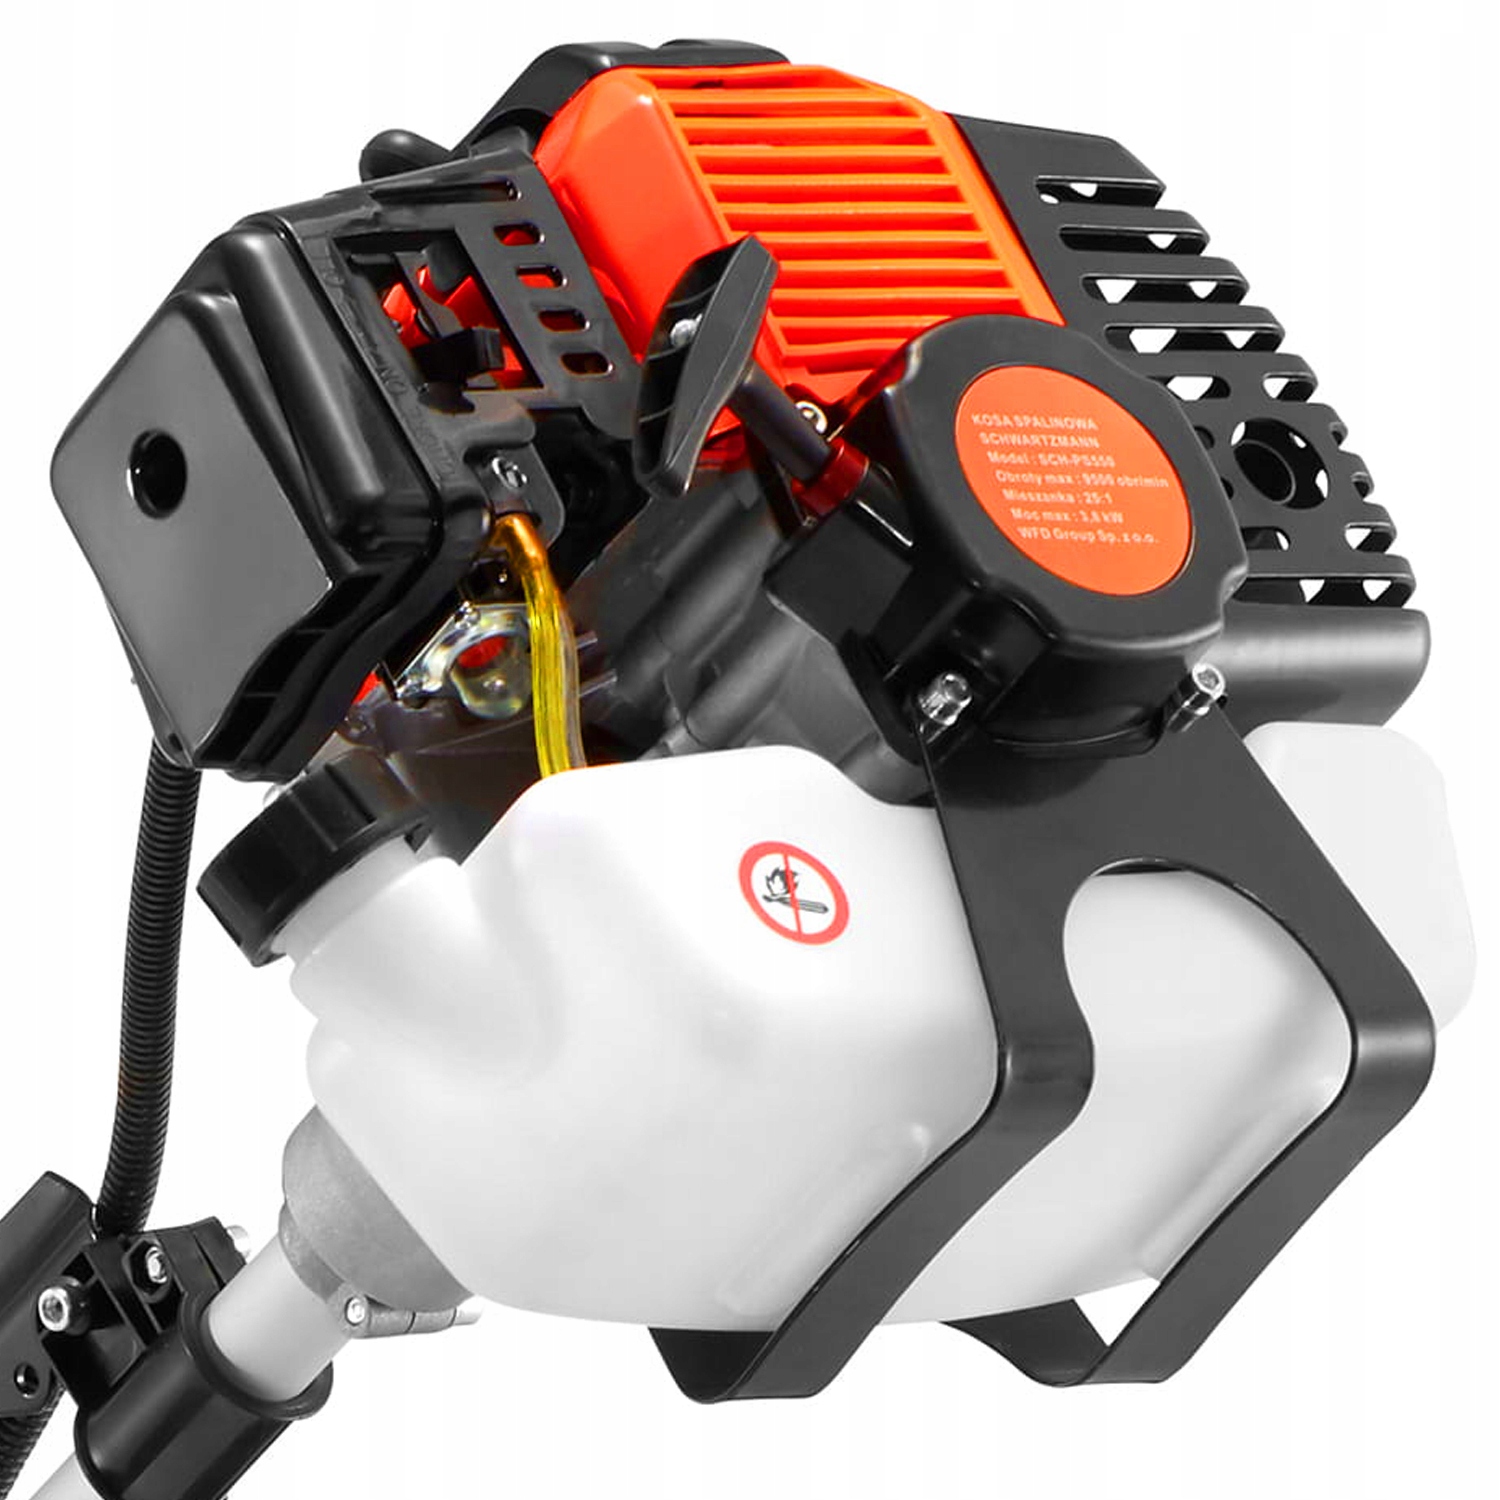 Motor pre vnútorné spaľovacie kosy je najsilnejší 5,2 km